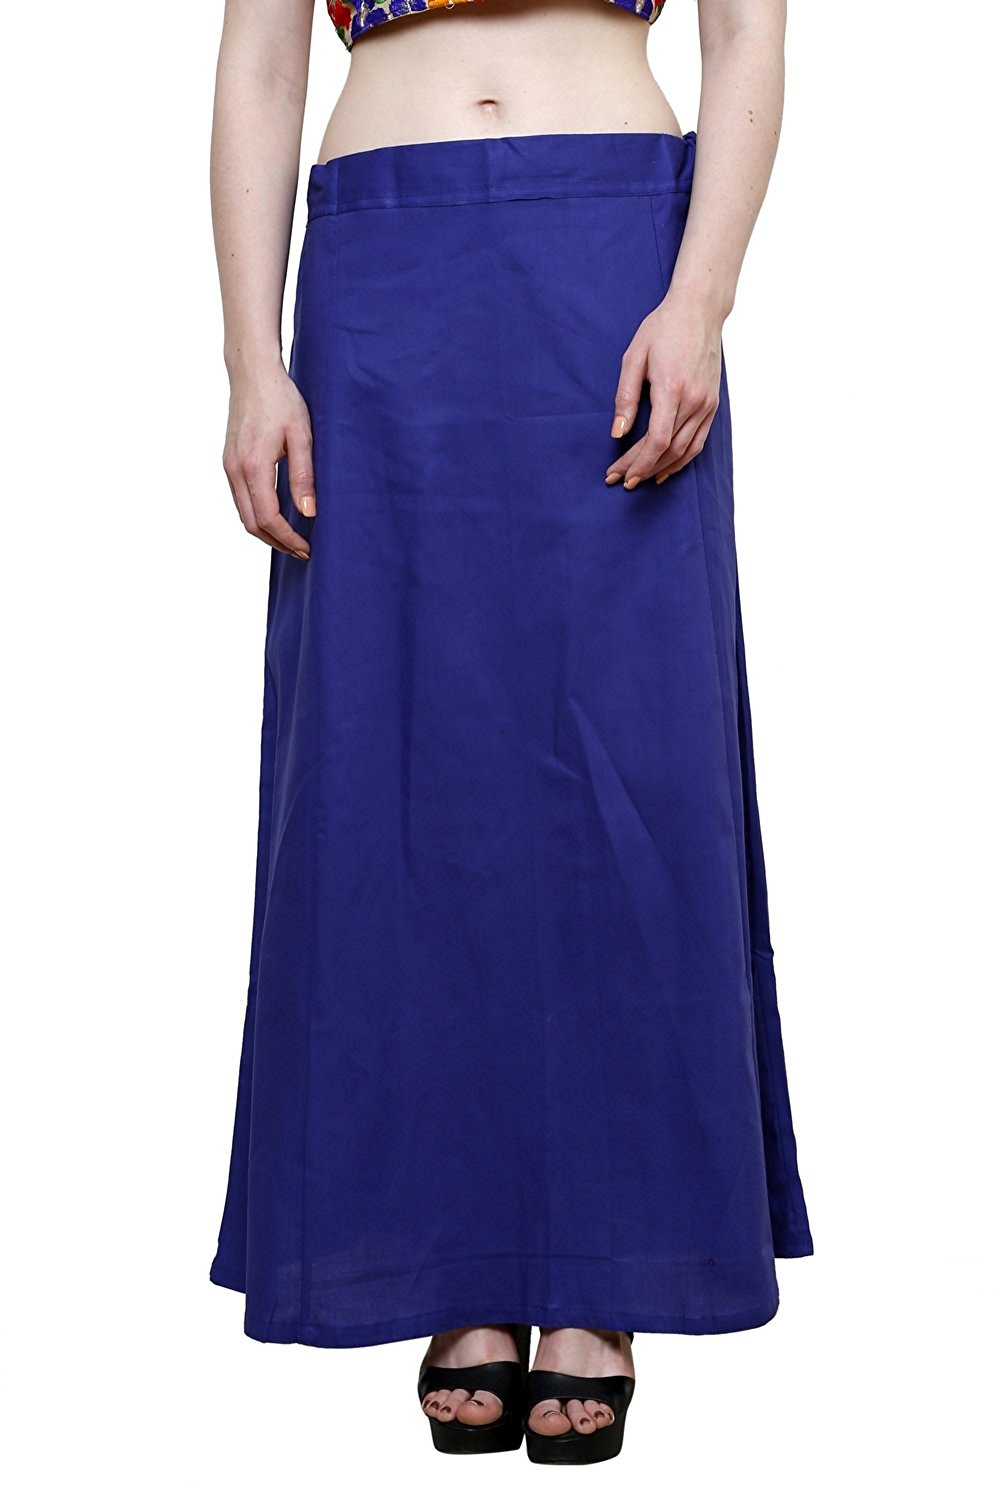 Stylesindia Women's Cotton Readymade Indian Inskirt Saree Petticoats Underskirt - Free Size-Purple